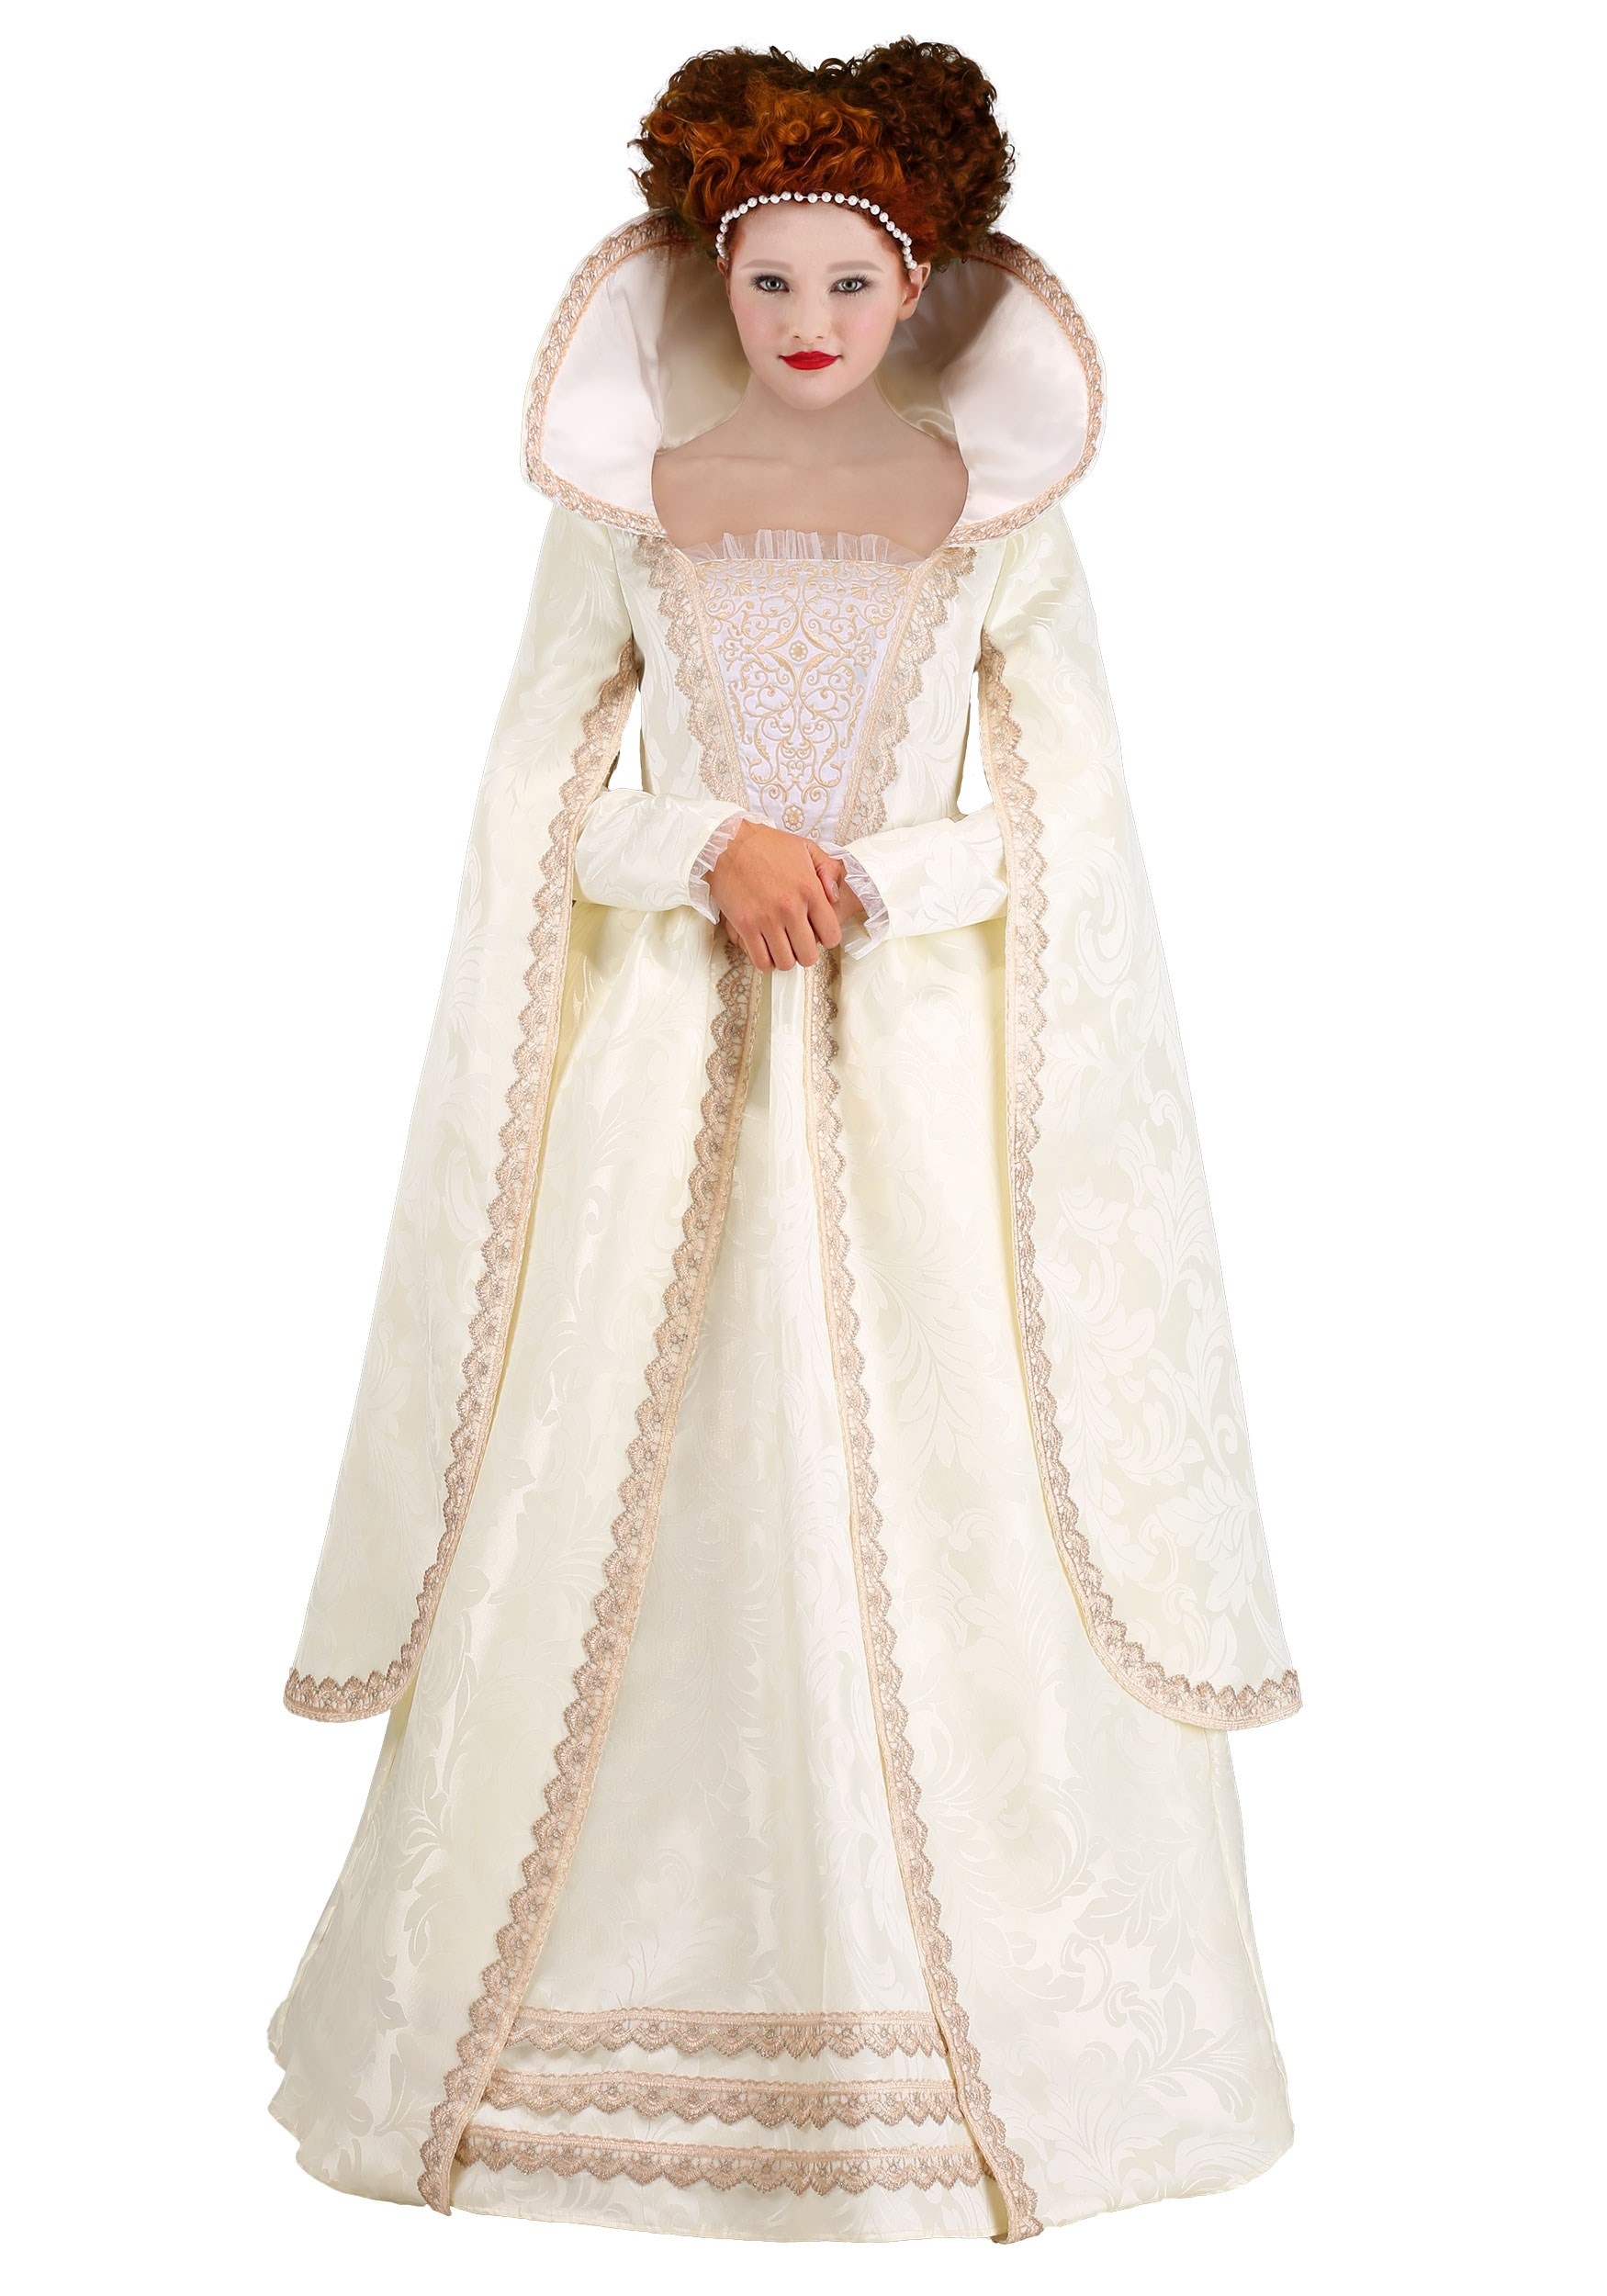 Queen Elizabeth I Costume for Women